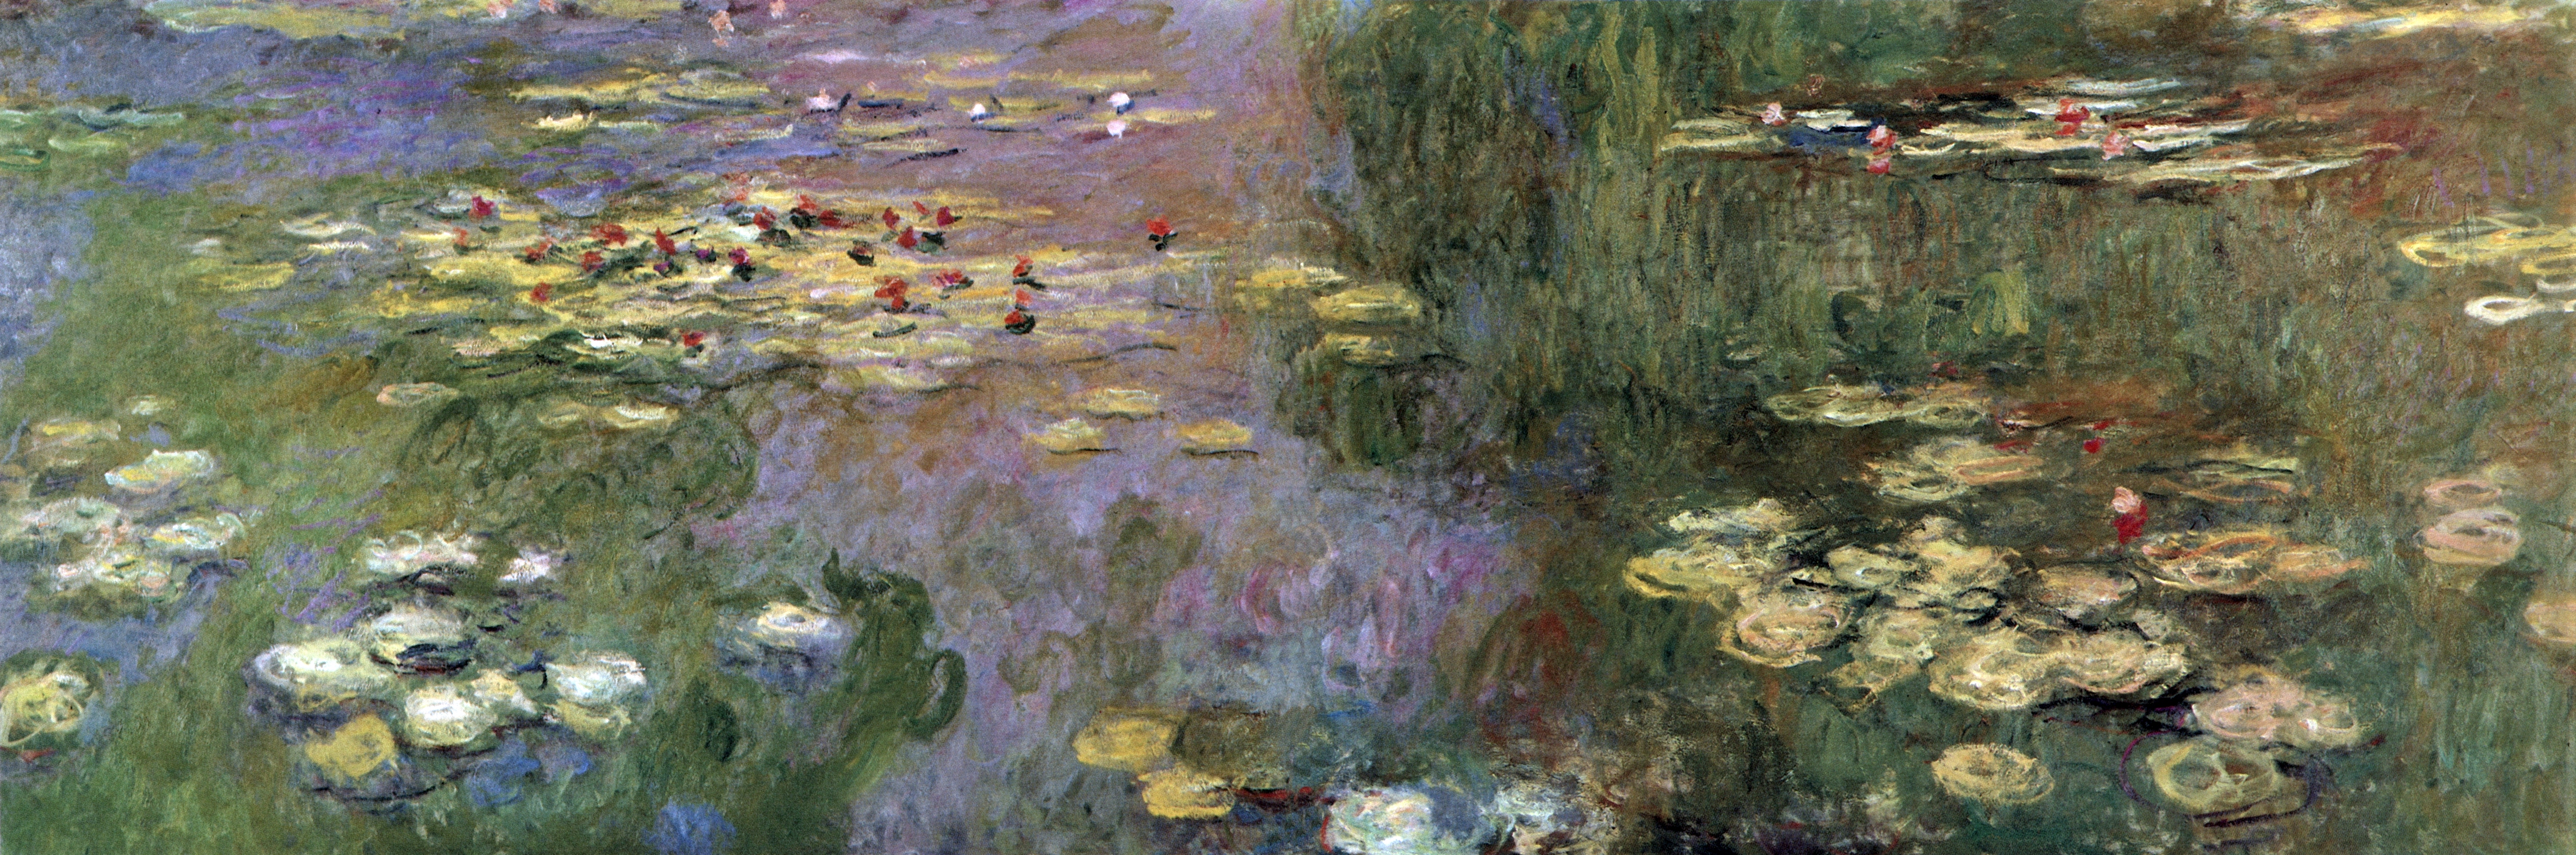 Моне Клод. Водяные лилии. 1920-1921